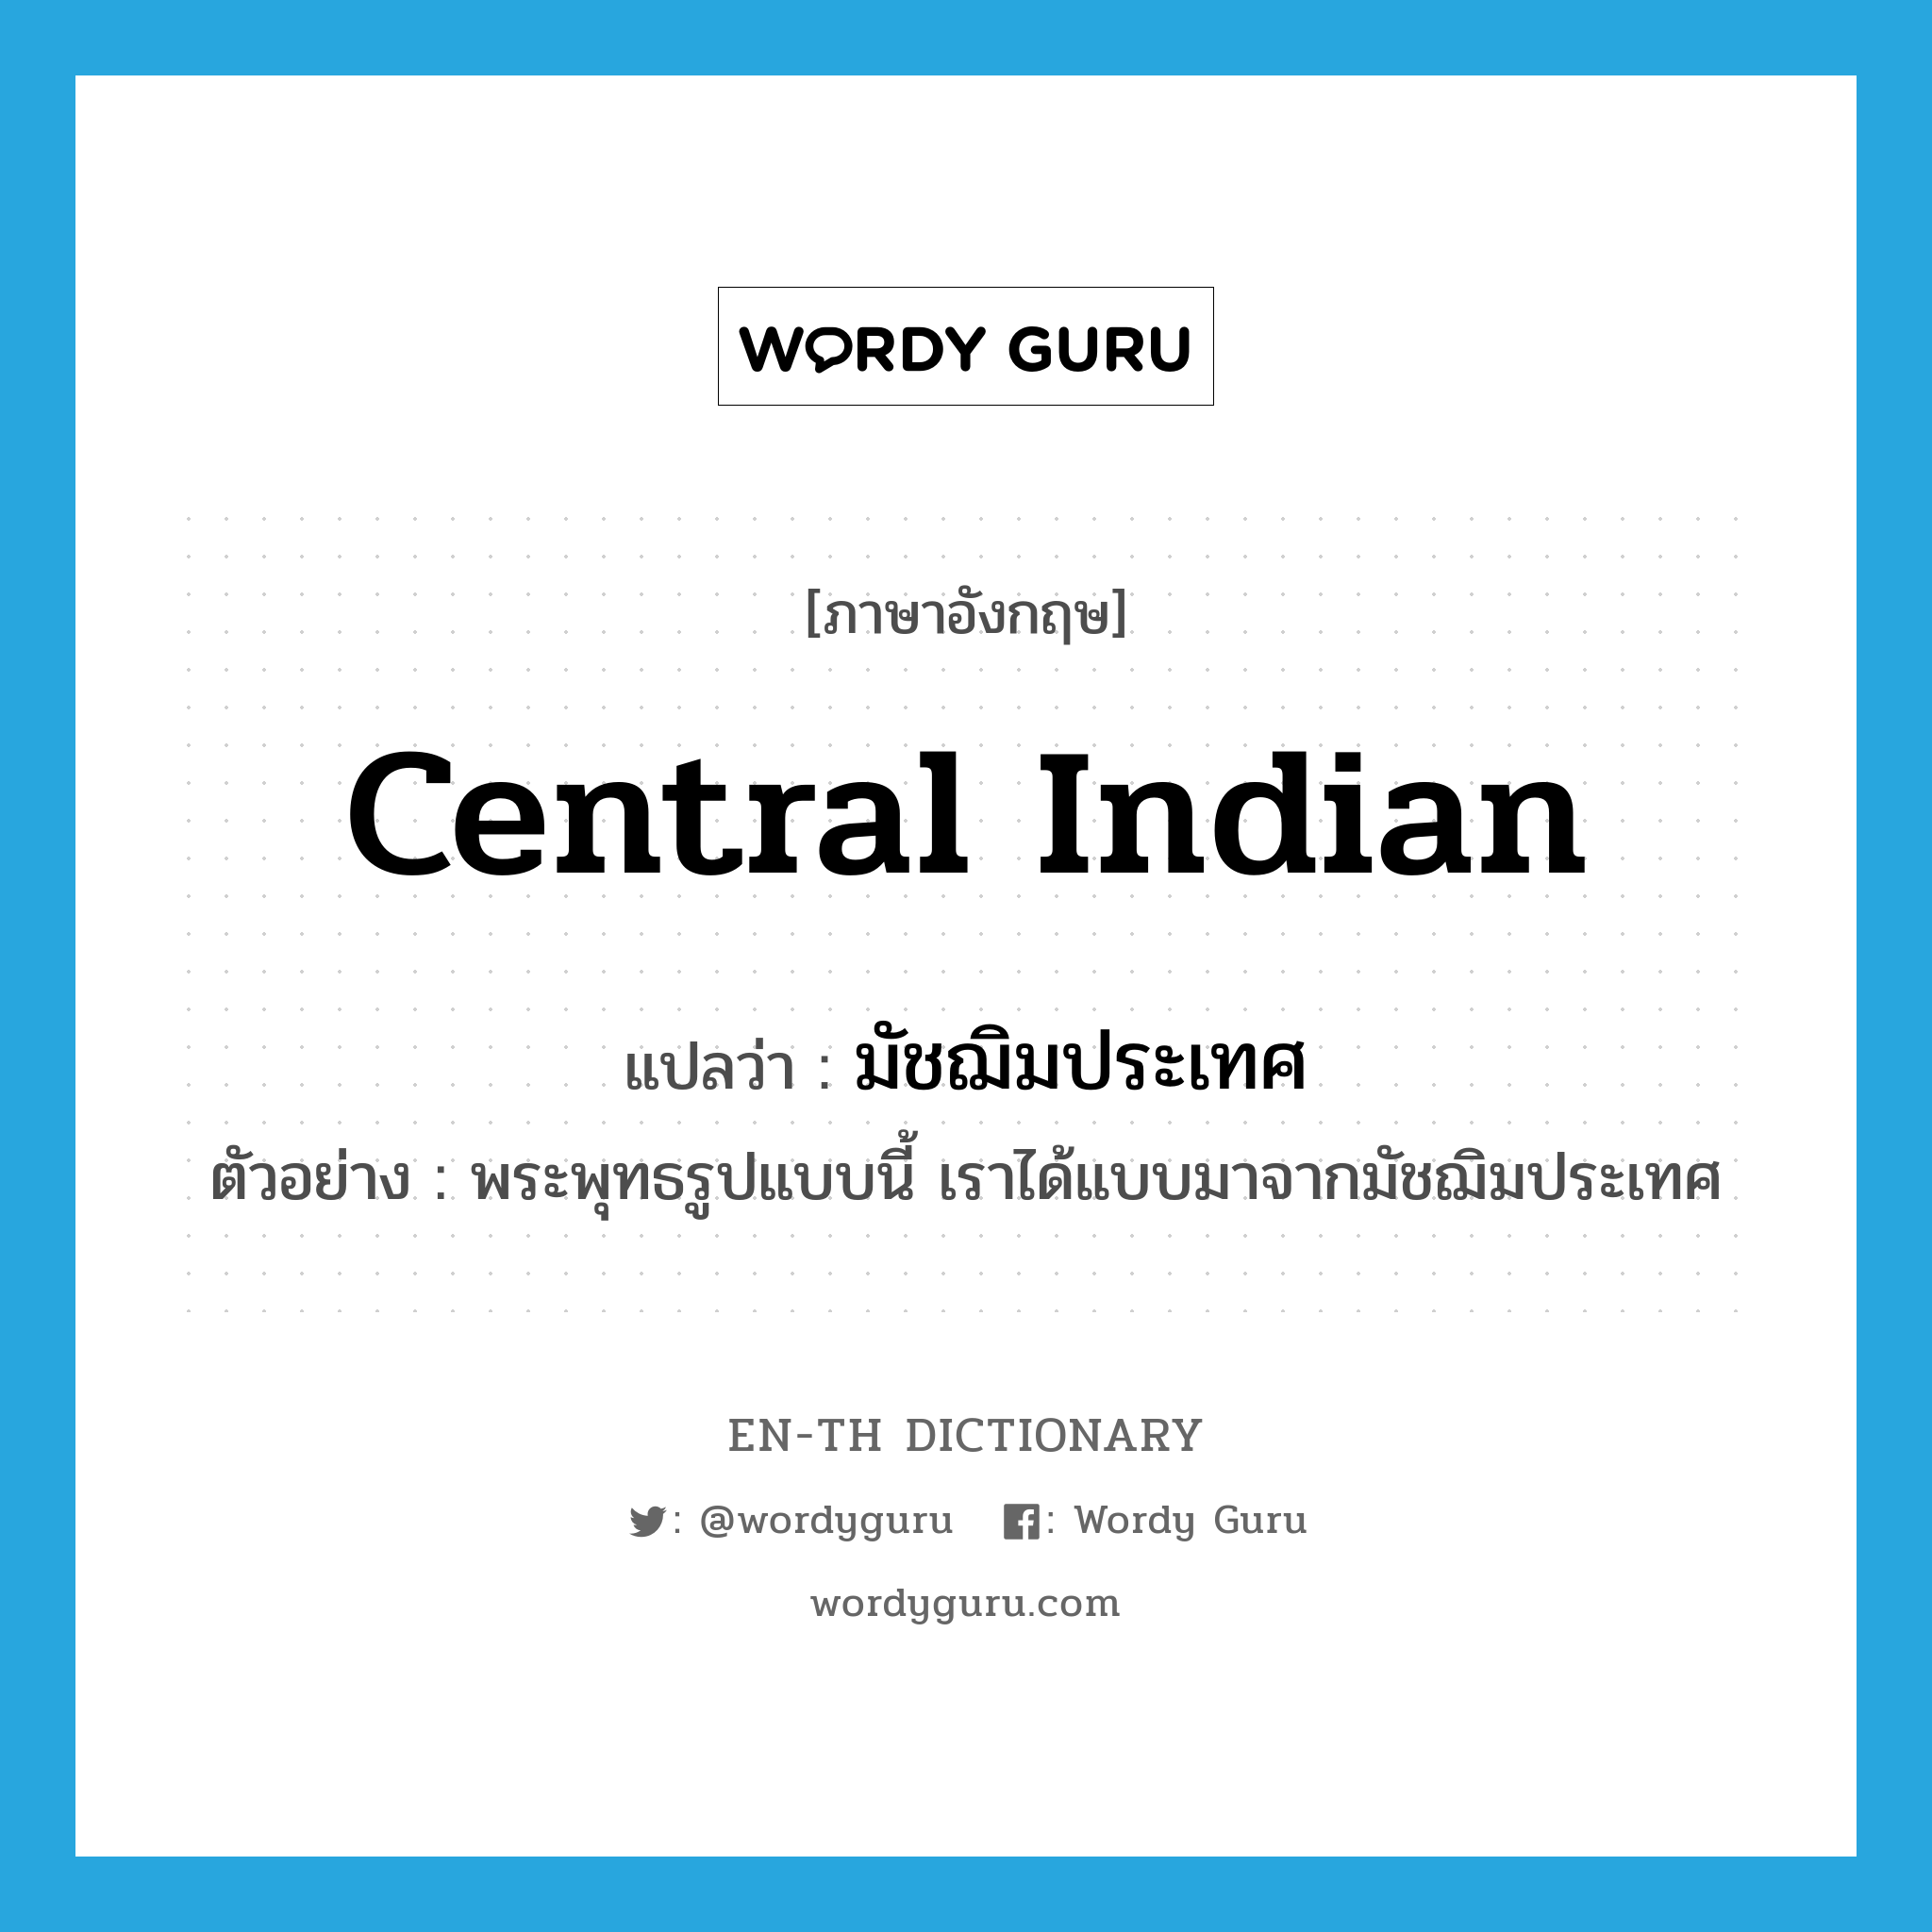 Central Indian แปลว่า?, คำศัพท์ภาษาอังกฤษ Central Indian แปลว่า มัชฌิมประเทศ ประเภท N ตัวอย่าง พระพุทธรูปแบบนี้ เราได้แบบมาจากมัชฌิมประเทศ หมวด N